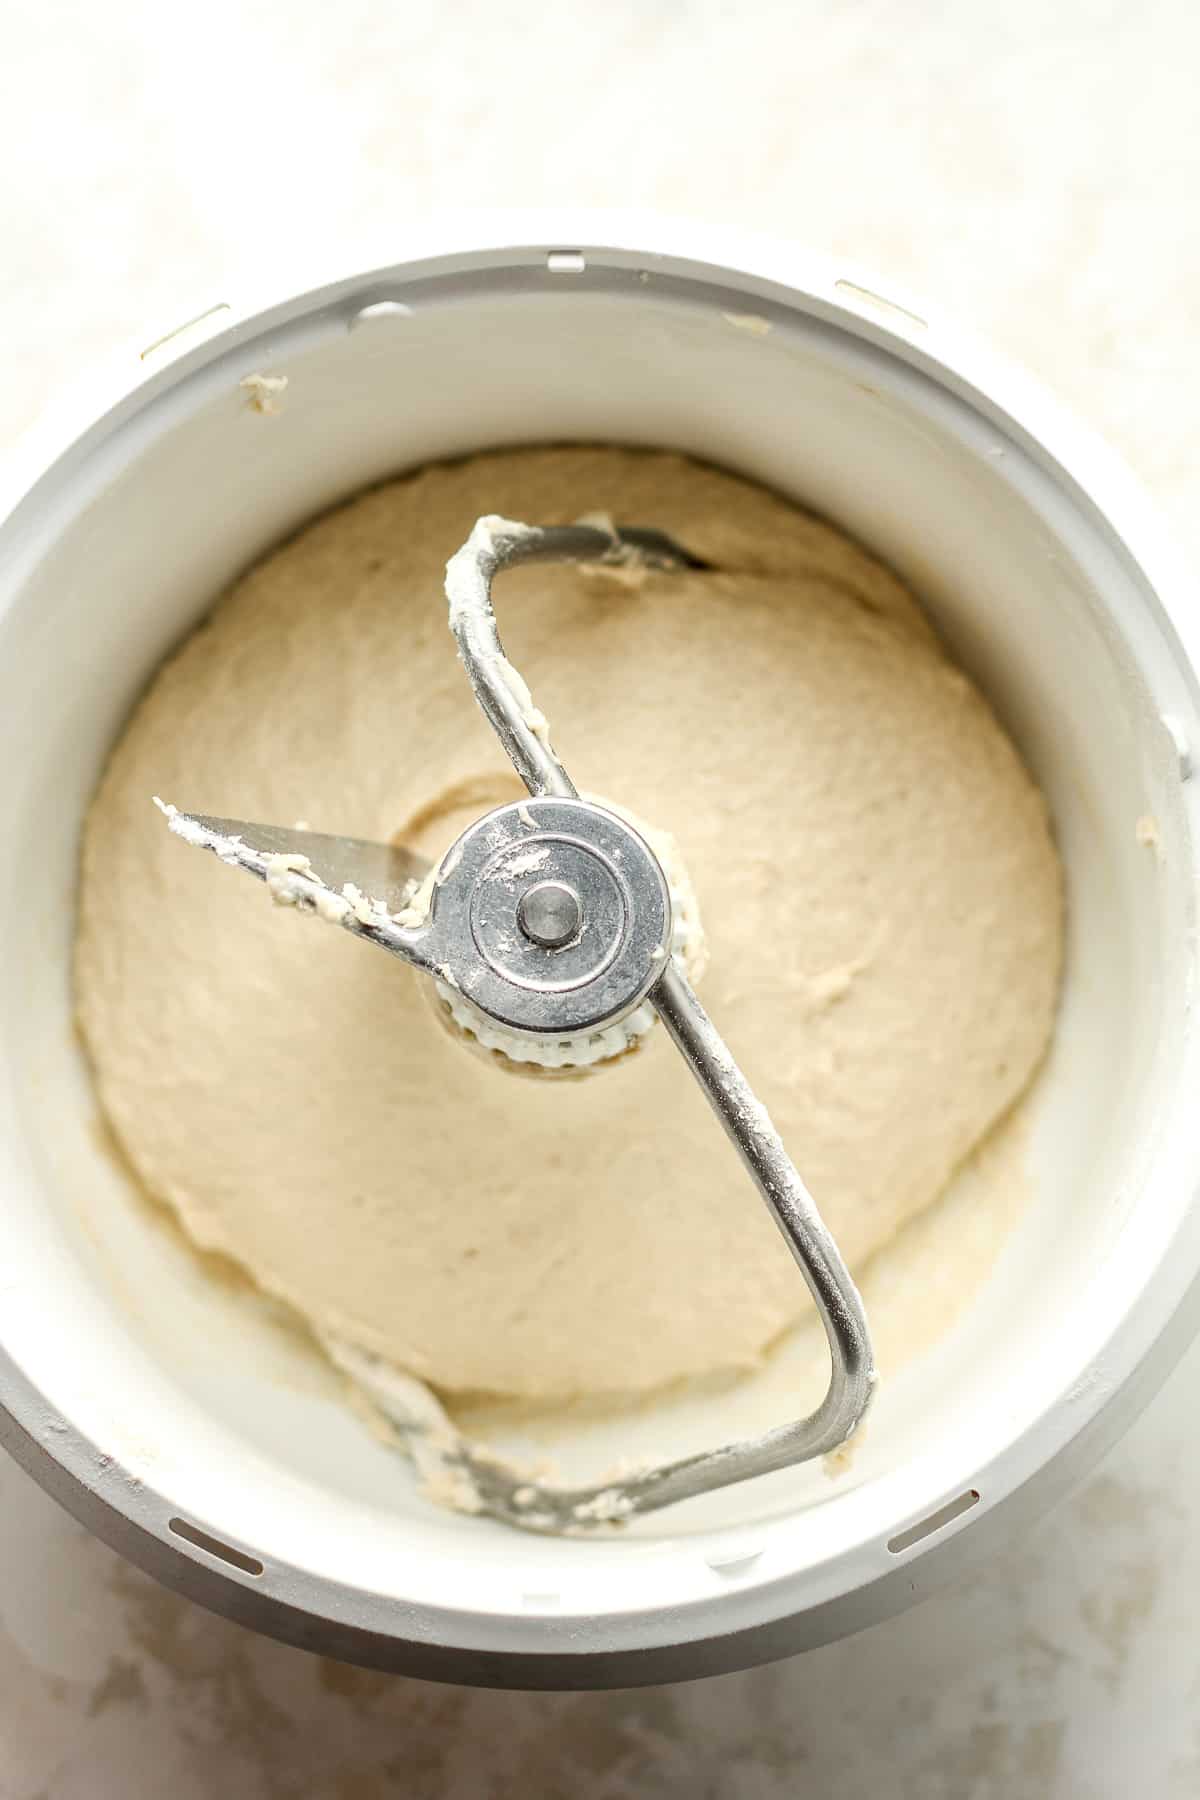 A mixer of the pretzel dough.